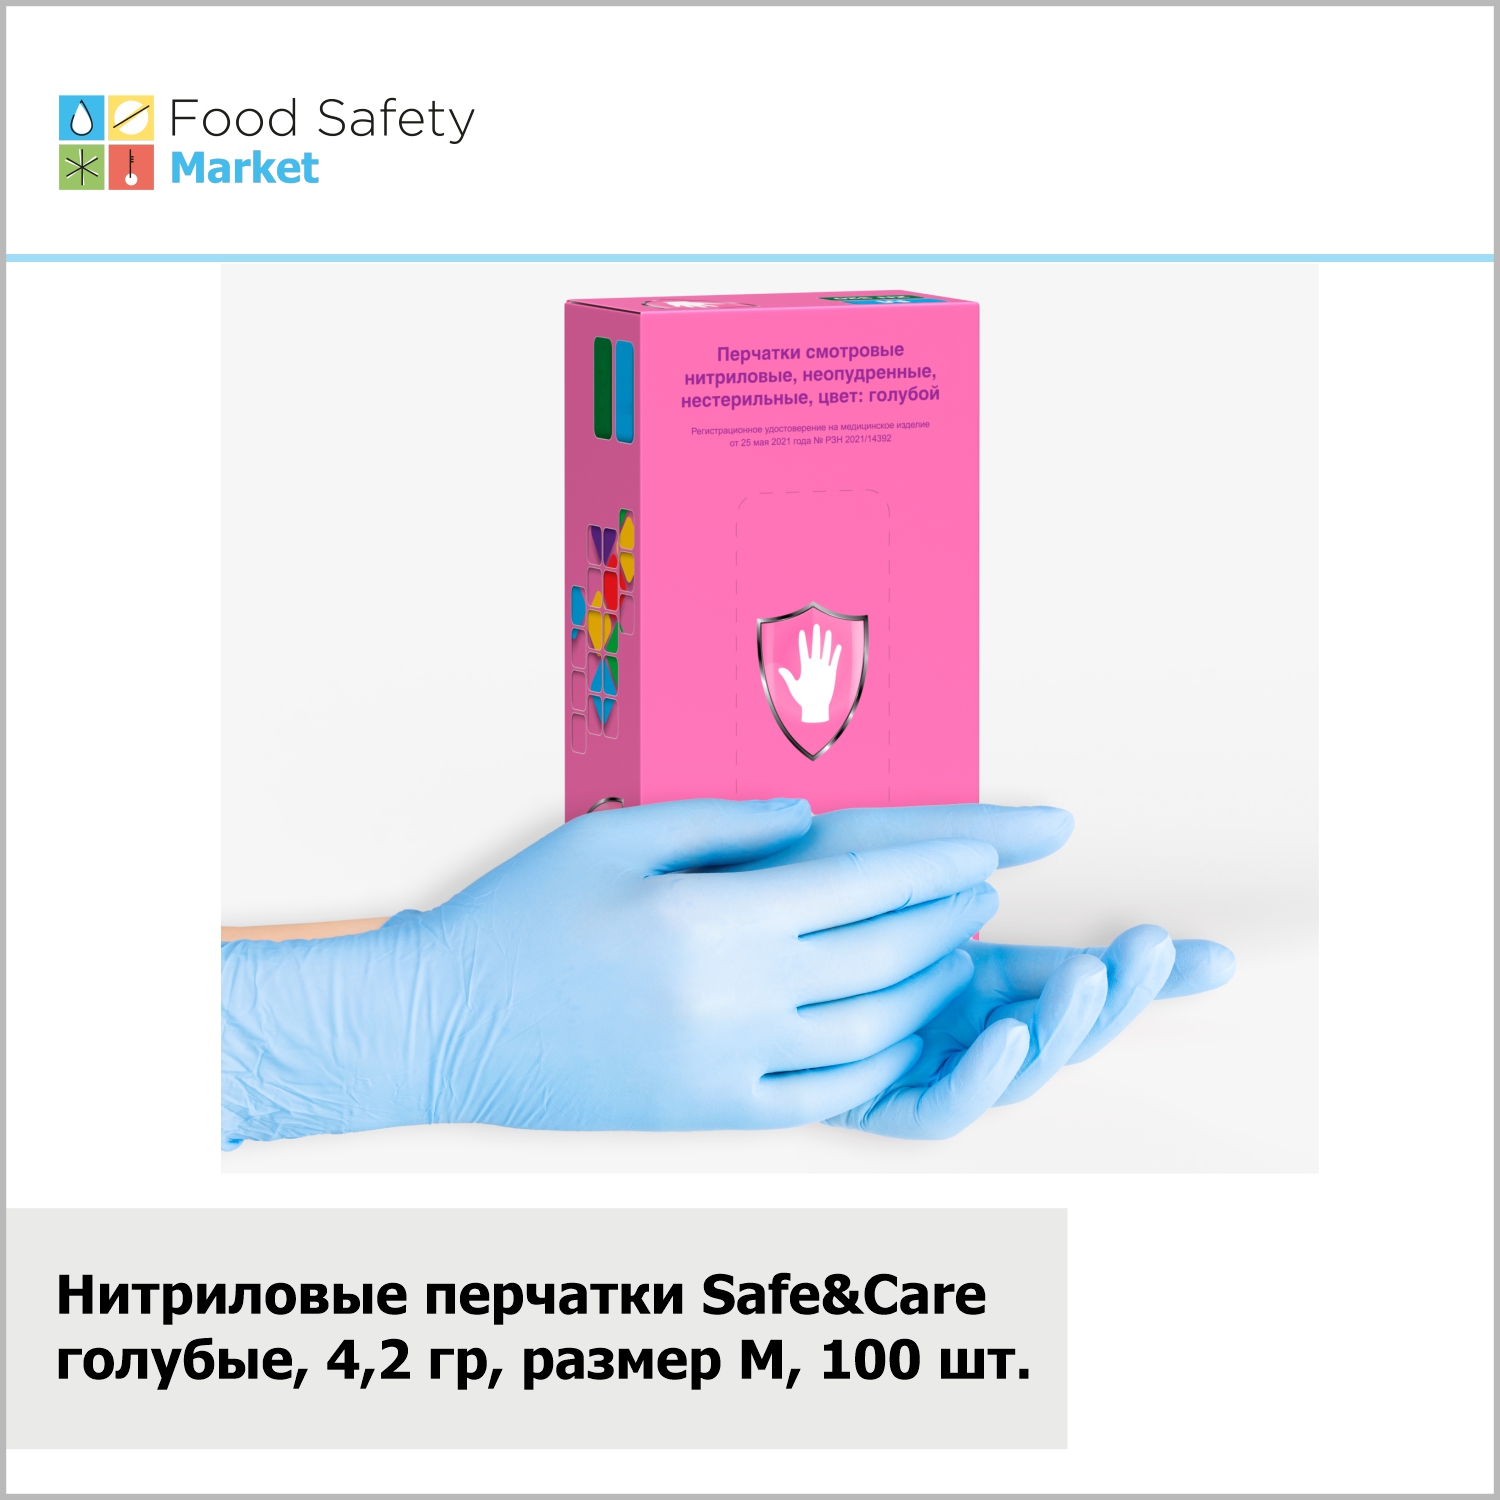 Нитриловые перчатки "Safe&Care" голубые, 4,2 гр, размер M, 100 шт. в упак.